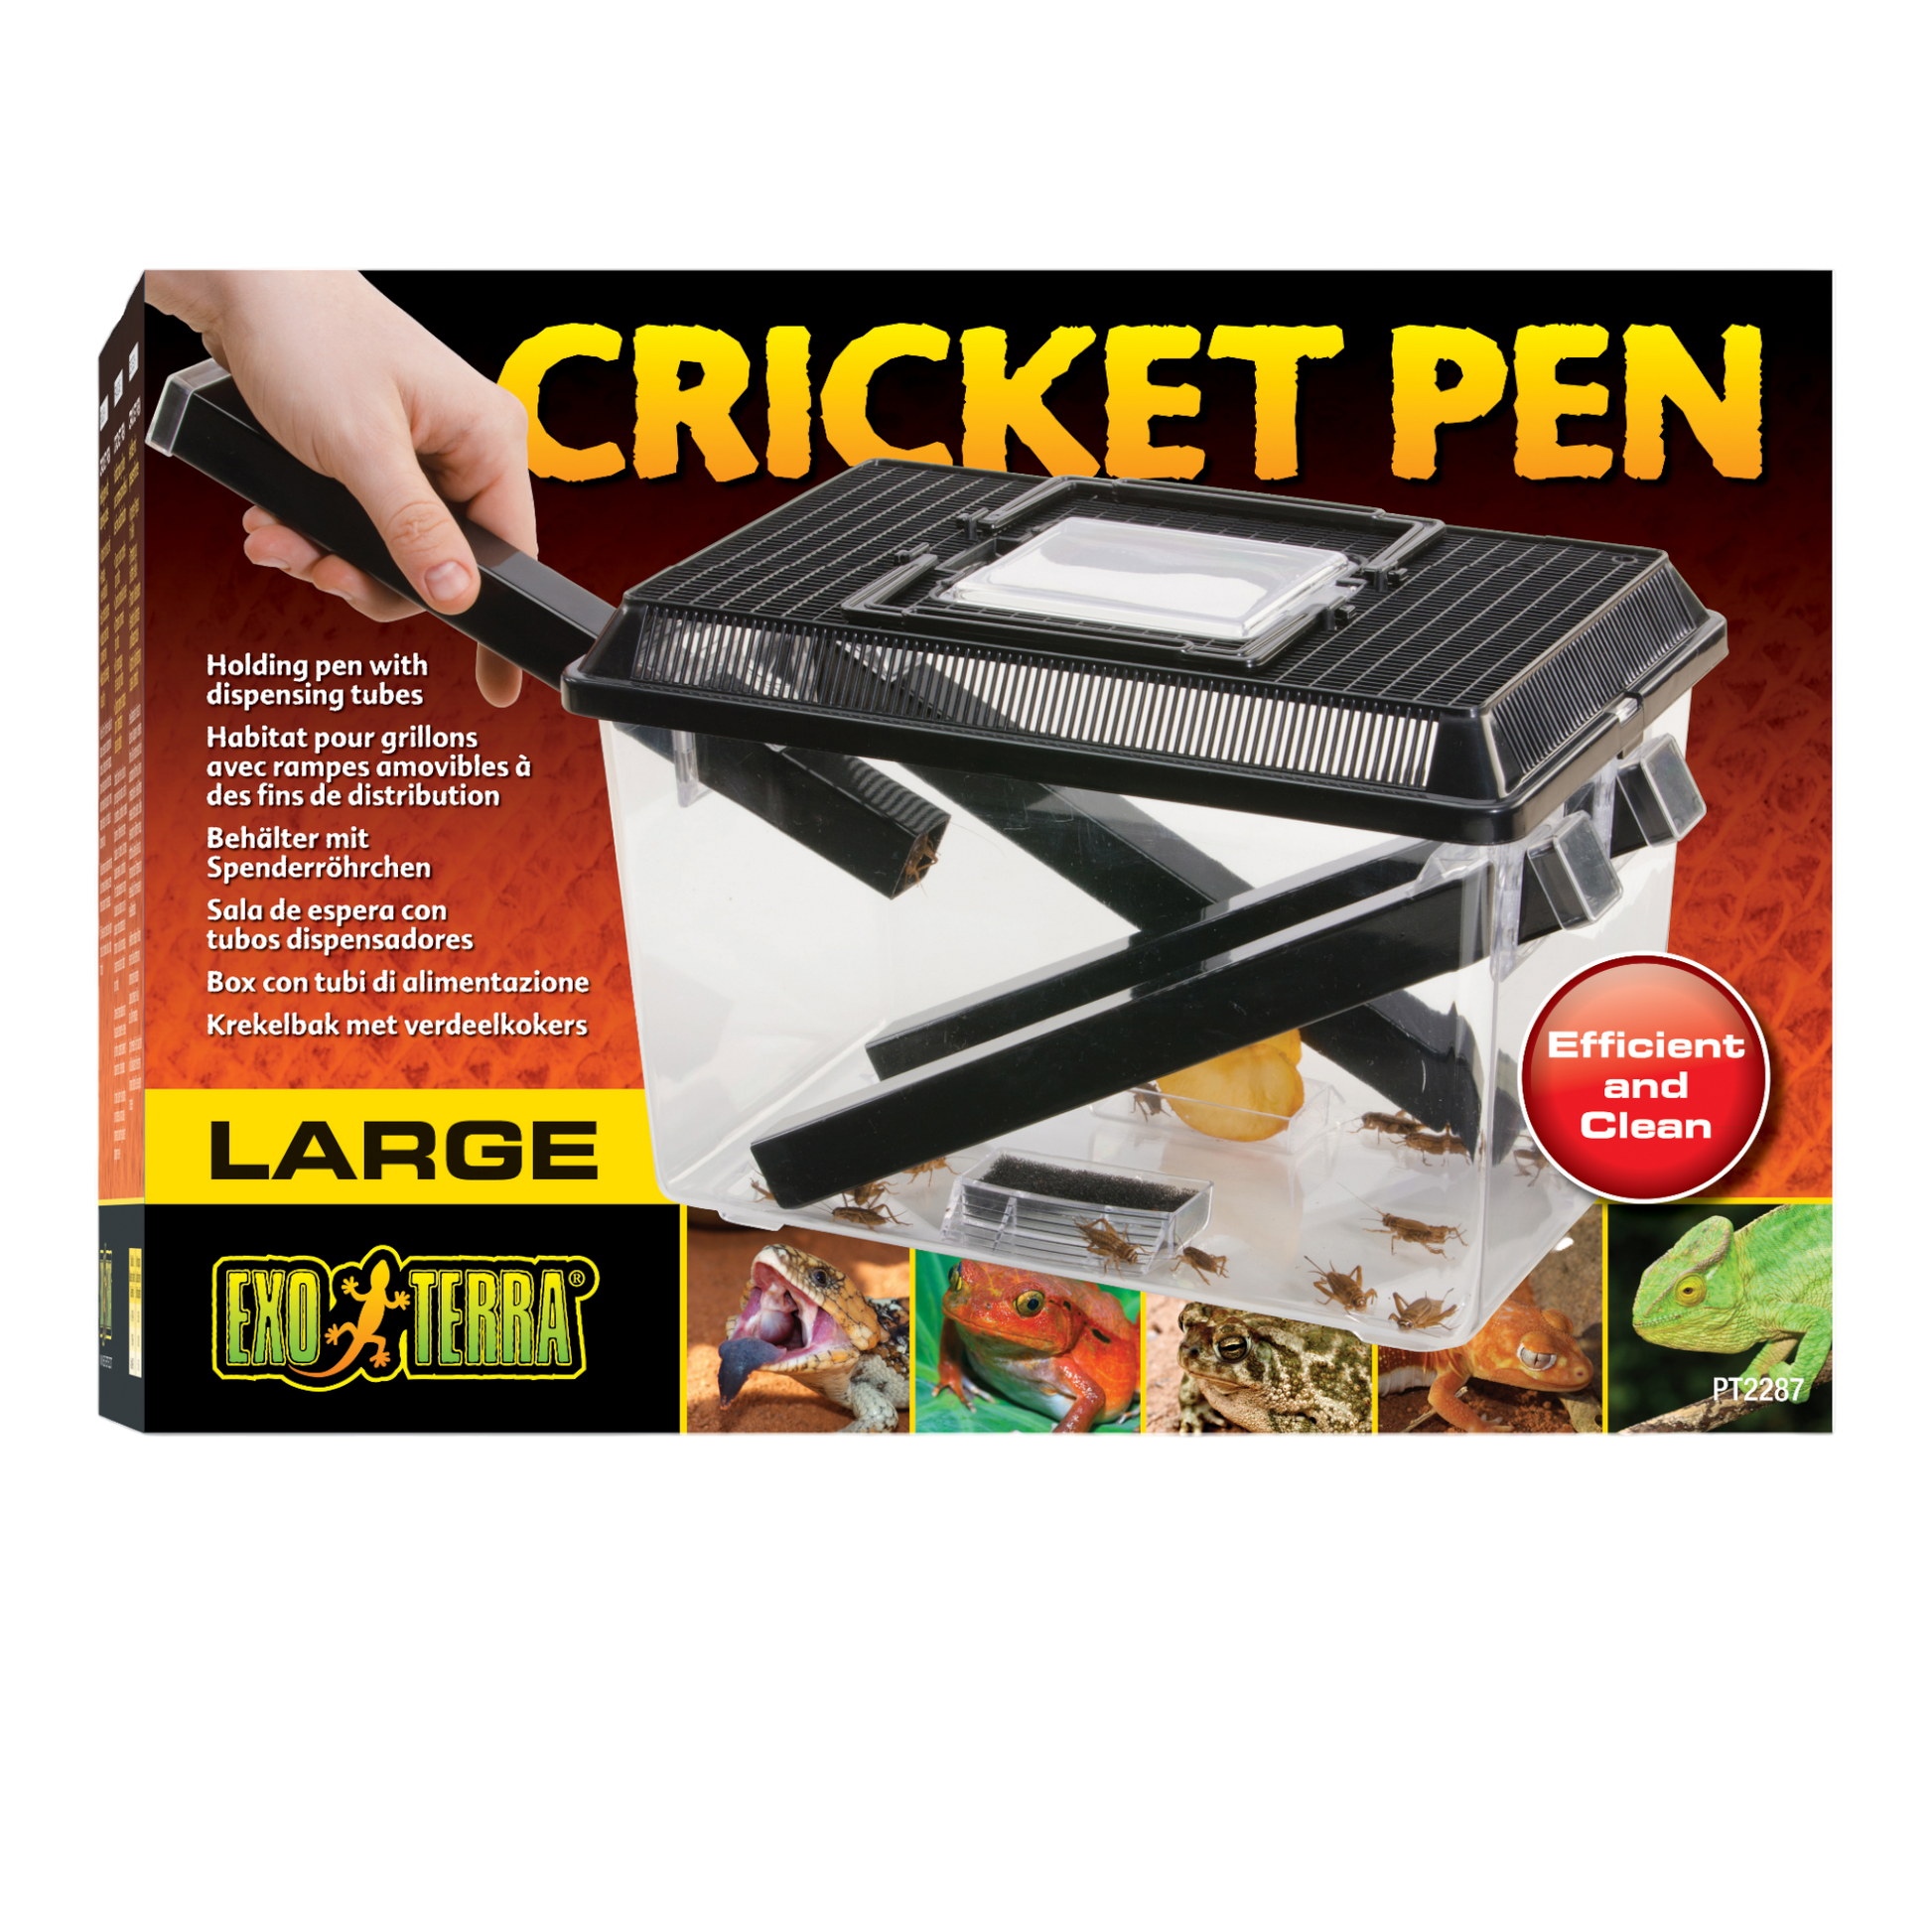 Cricket Pen ( Large )  Der Grillenbehälter ist ideal zum Halten und Ausgeben von lebenden Grillen. Grillen bevorzugen dunkle Plätze und kriechen daher gerne in die Röhrchen, die ihnen als Versteck dienen.